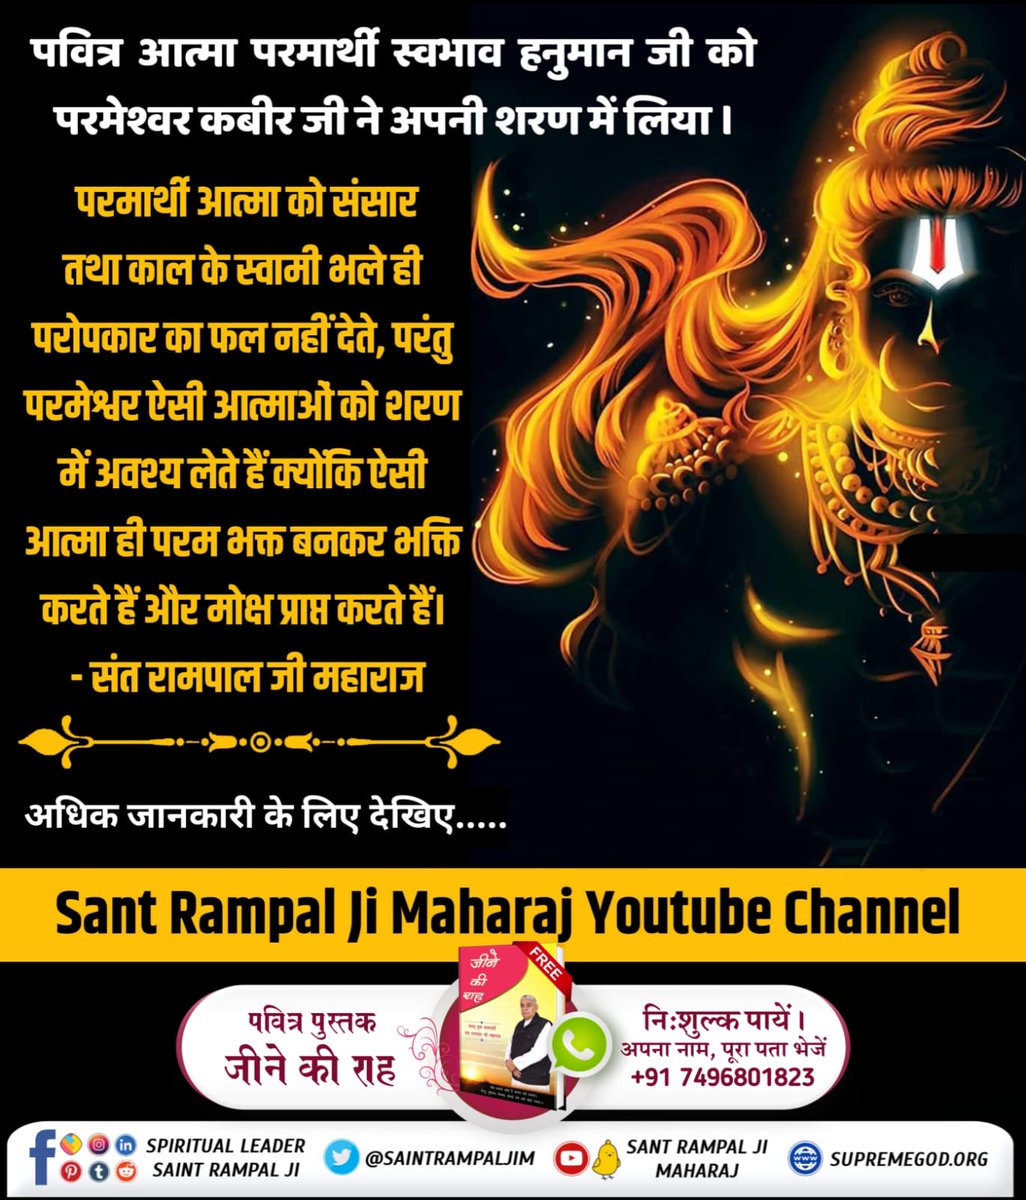 #अयोध्यासे_जानेकेबाद_हनुमानको मिले पूर्ण परमात्मा
#GodMorningWednesday
For more information visit sant Rampal Ji Maharaj on YouTube channel